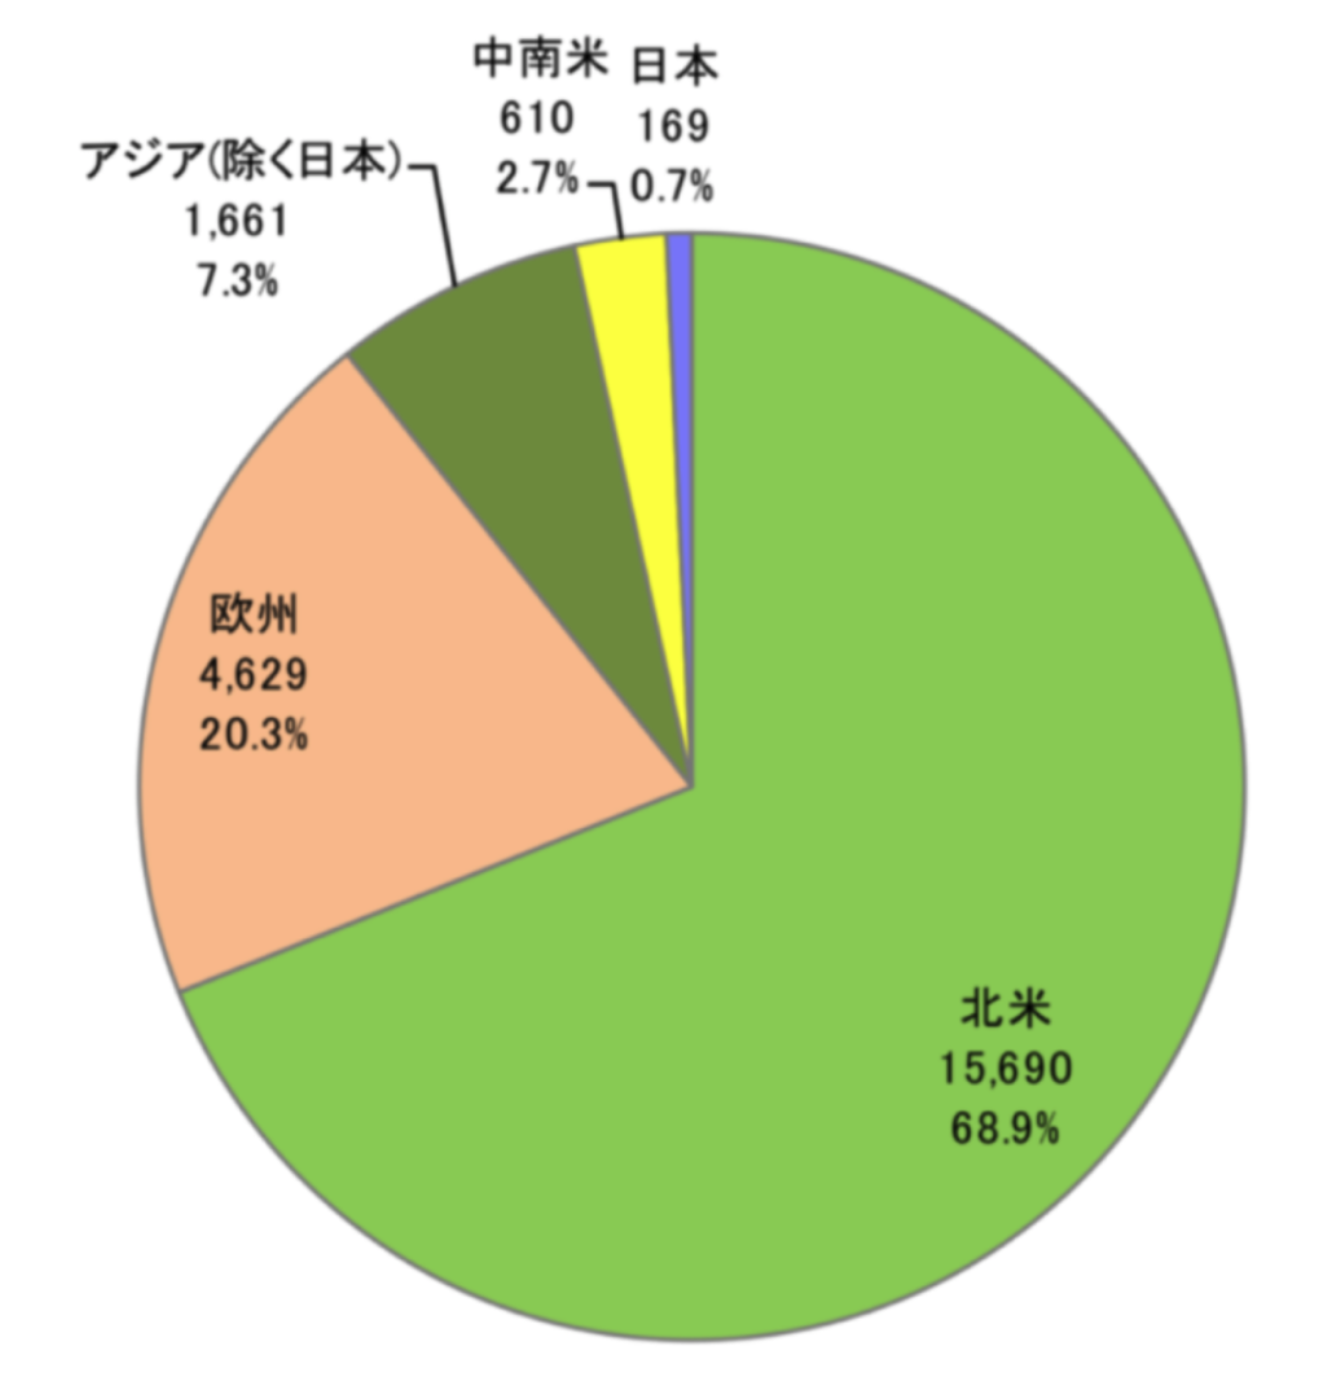 世界のヘッジファンドと日本のヘッジファンドの比較